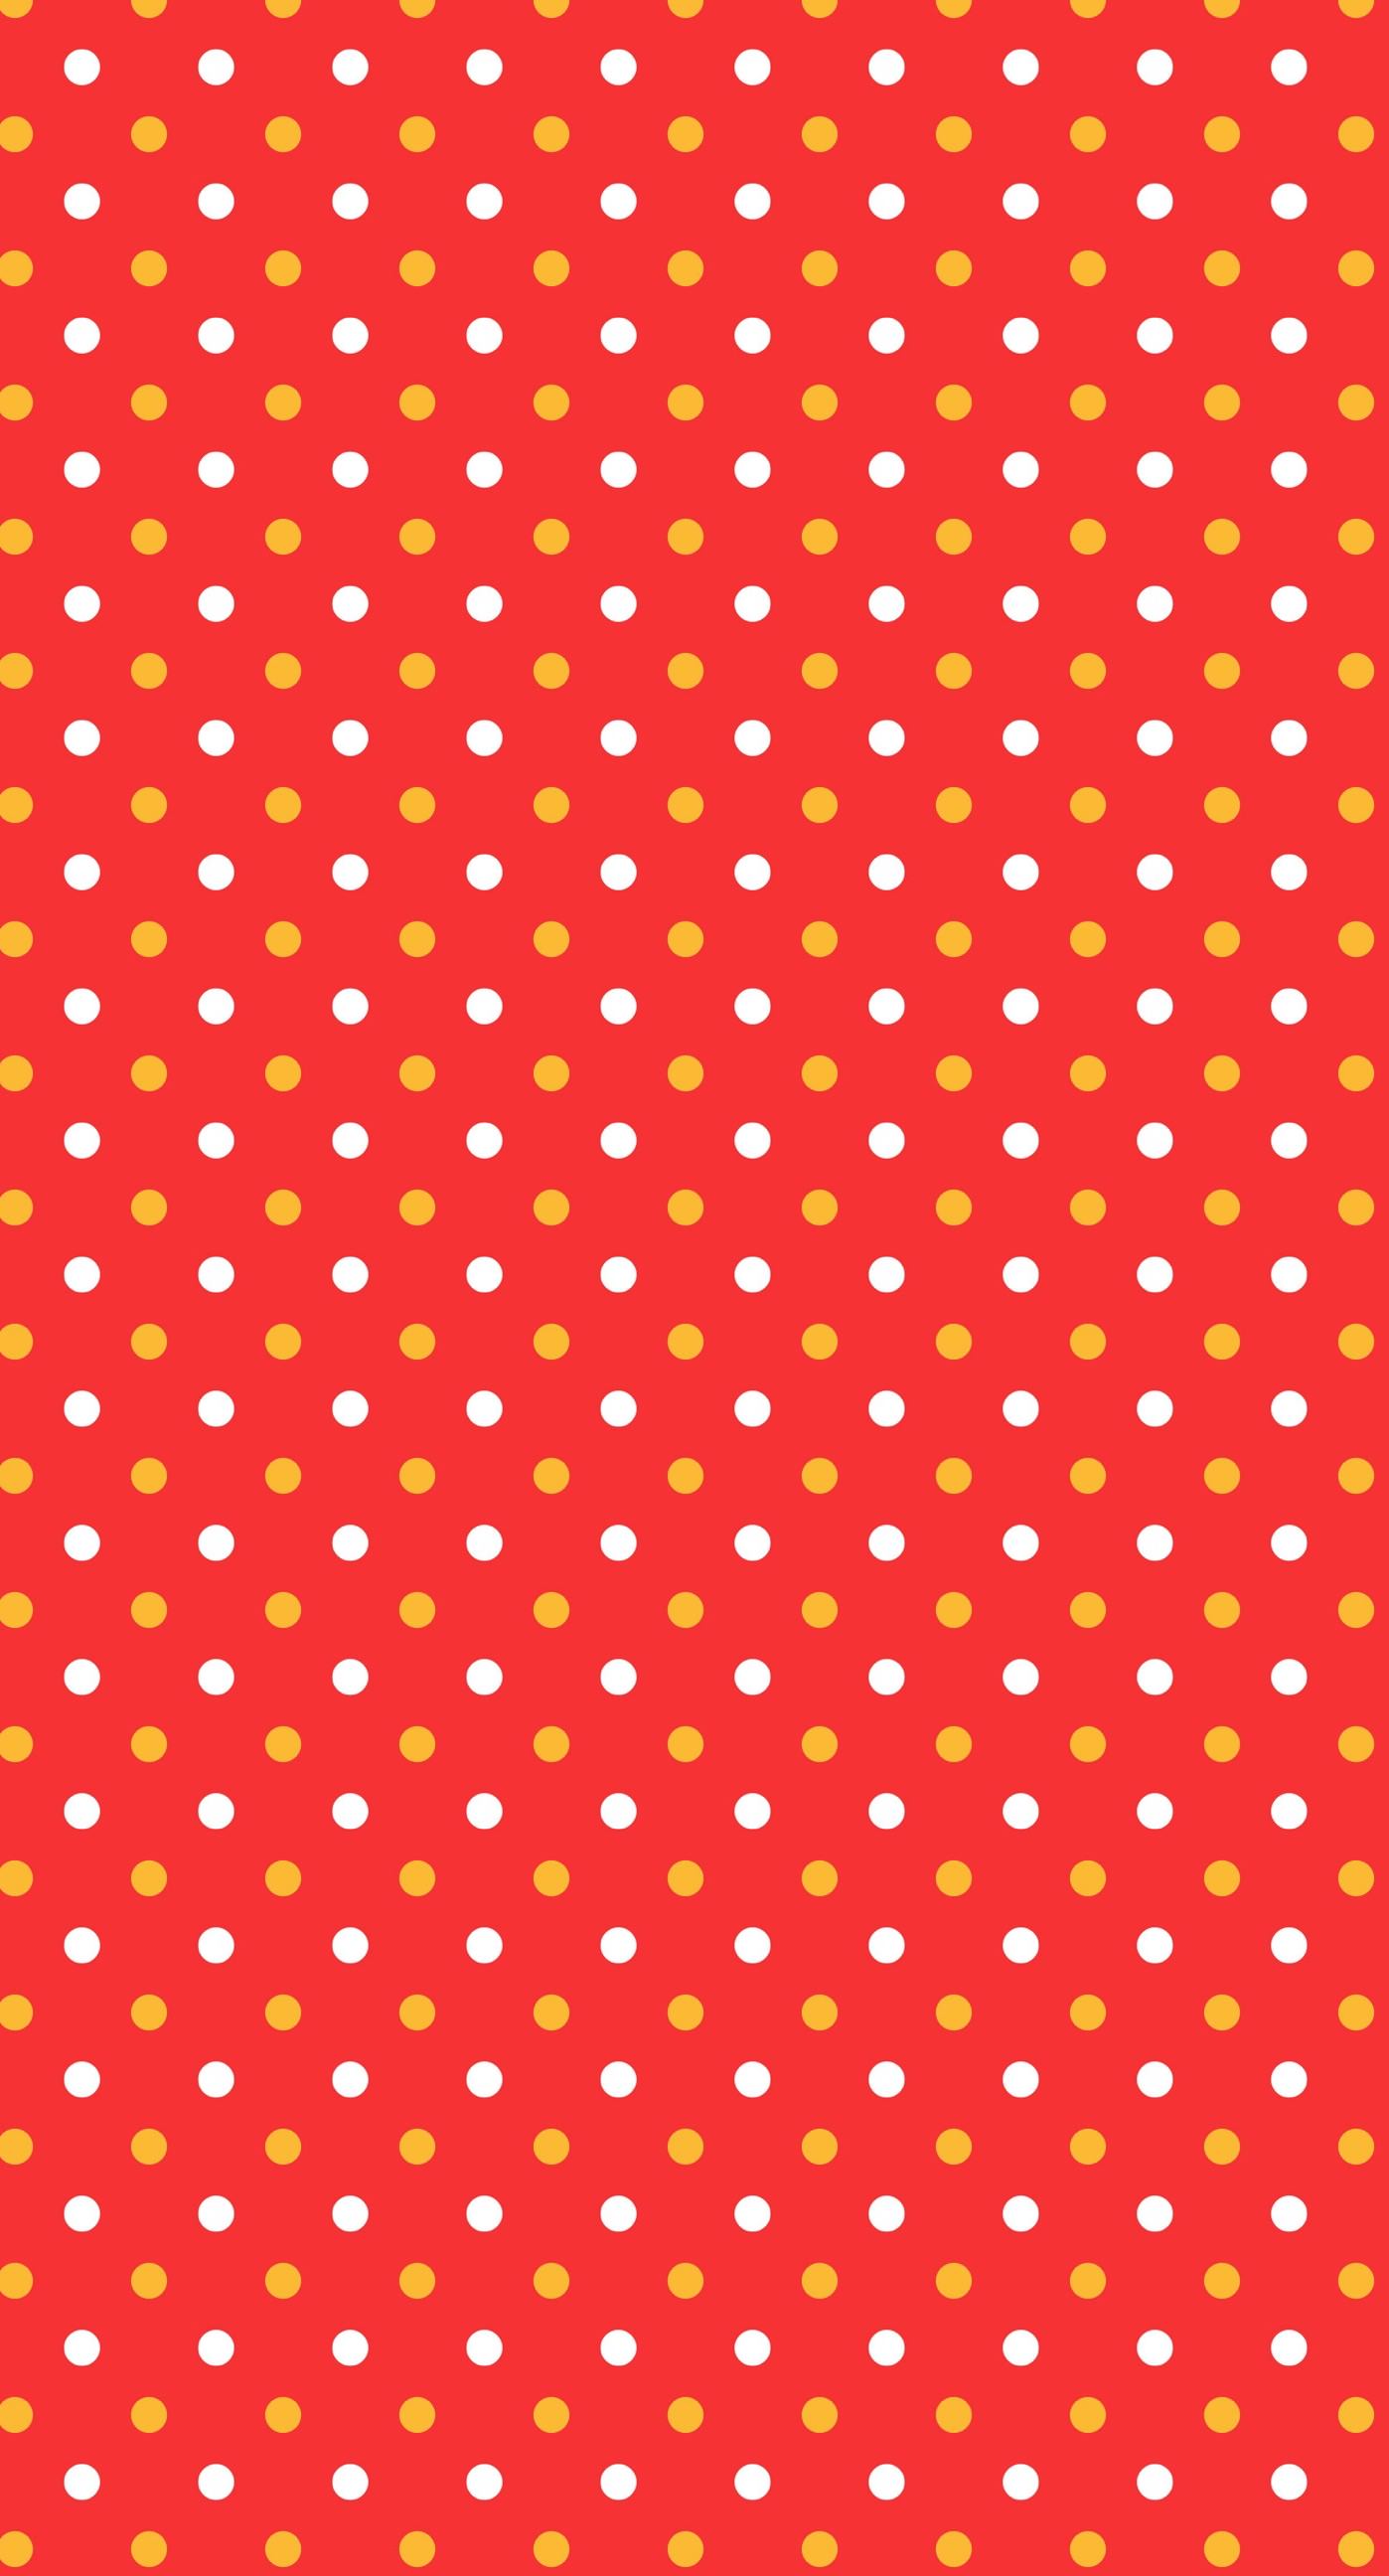 Pattern Polka Dot Red Women Friendly Wallpapersc Iphone6splus